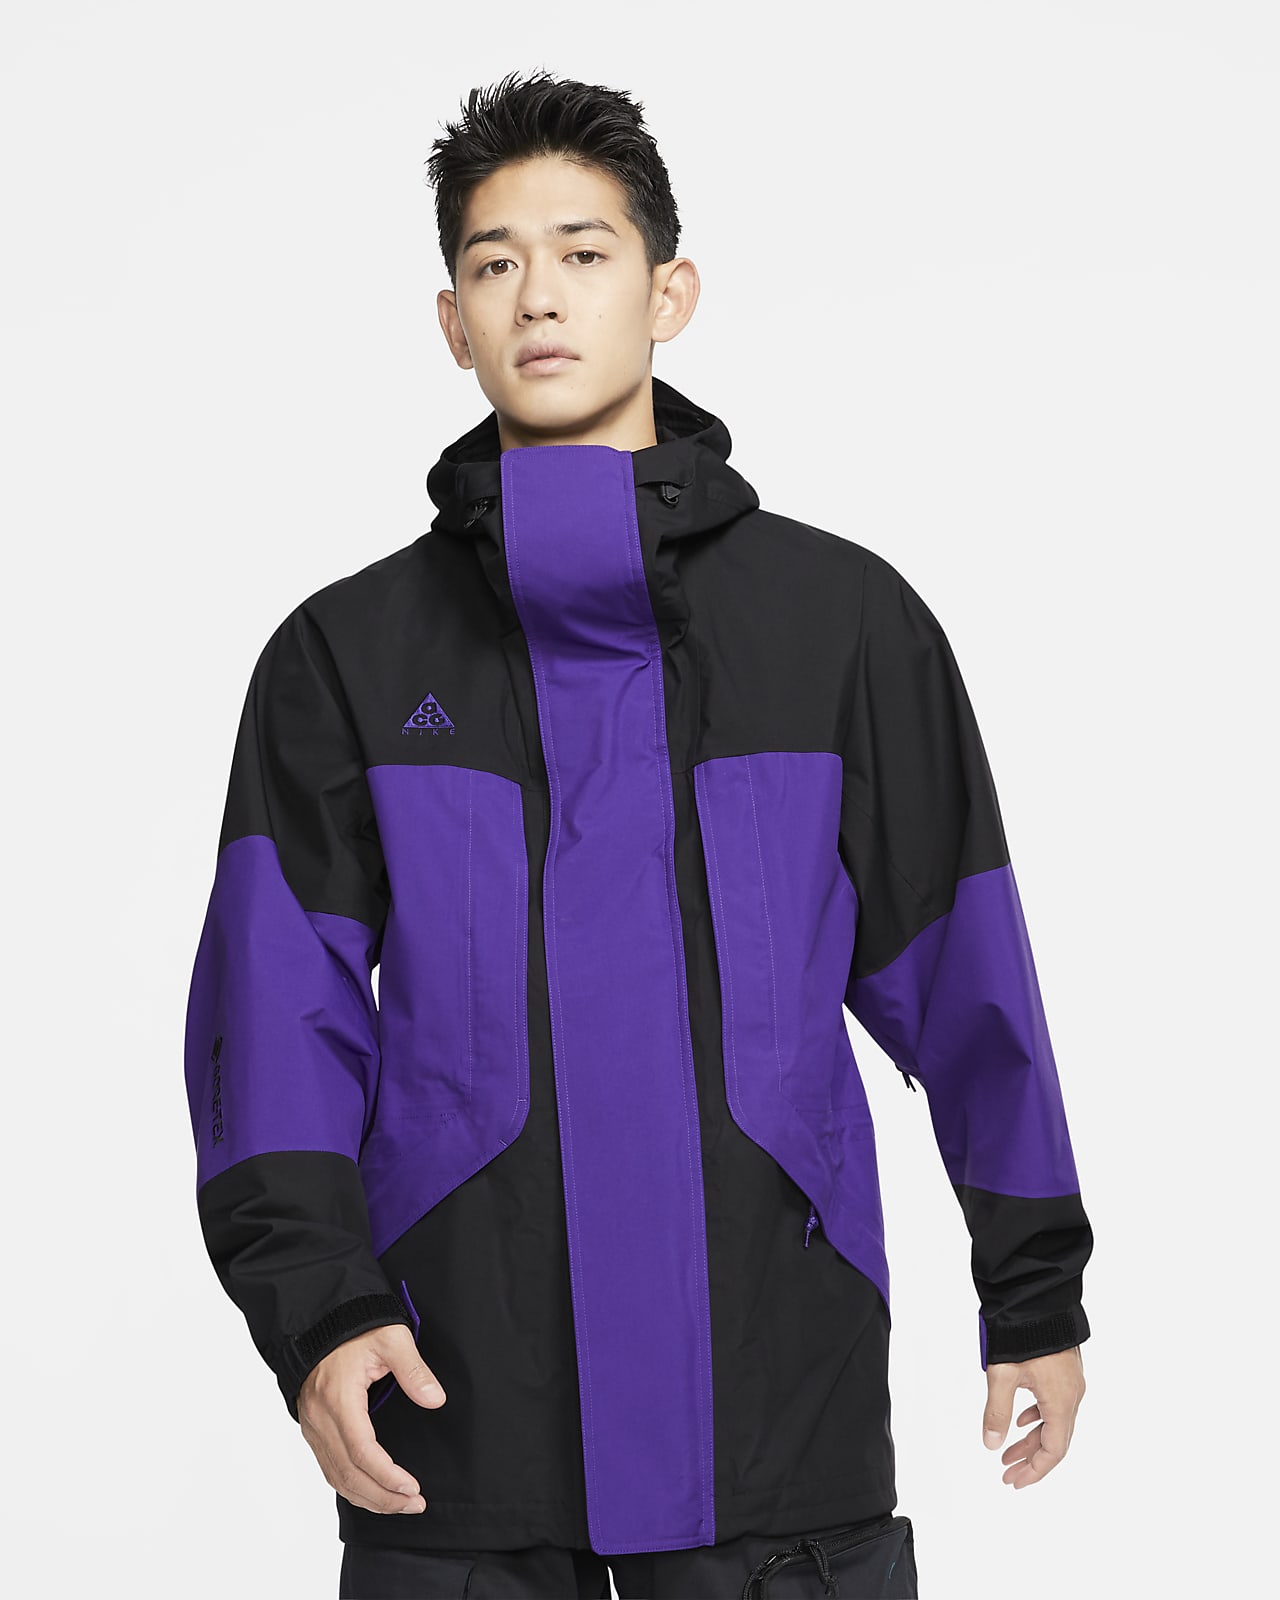 mens purple nike jacket